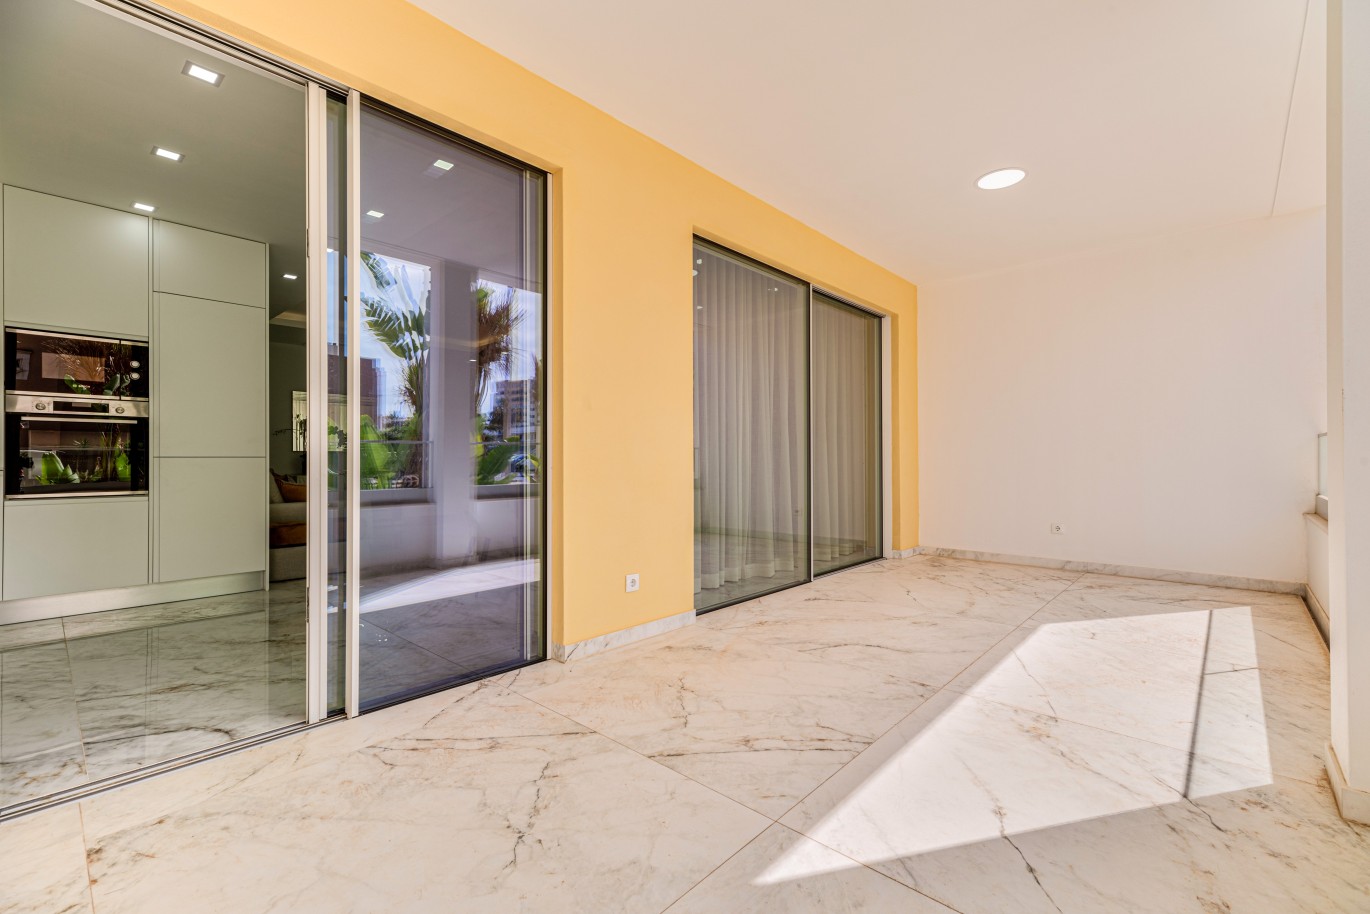 Verkauf einer Wohnung im Bau, mit Terrasse, Lagos, Algarve, Portugal_237997